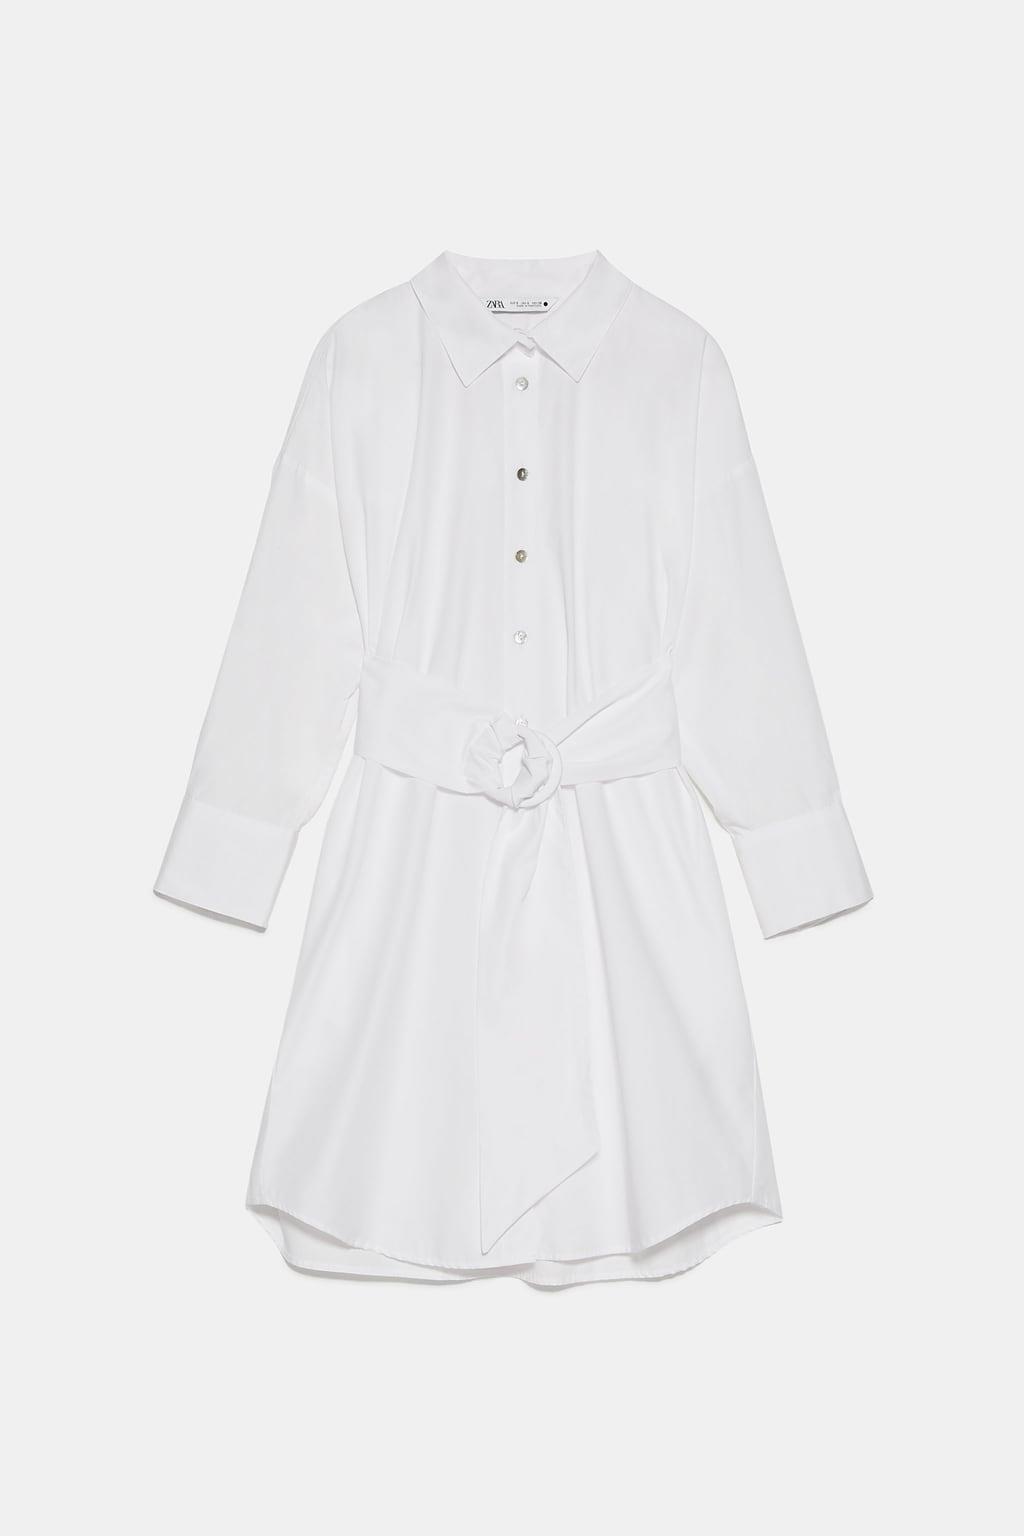 Vestido blanco camisero, Zara